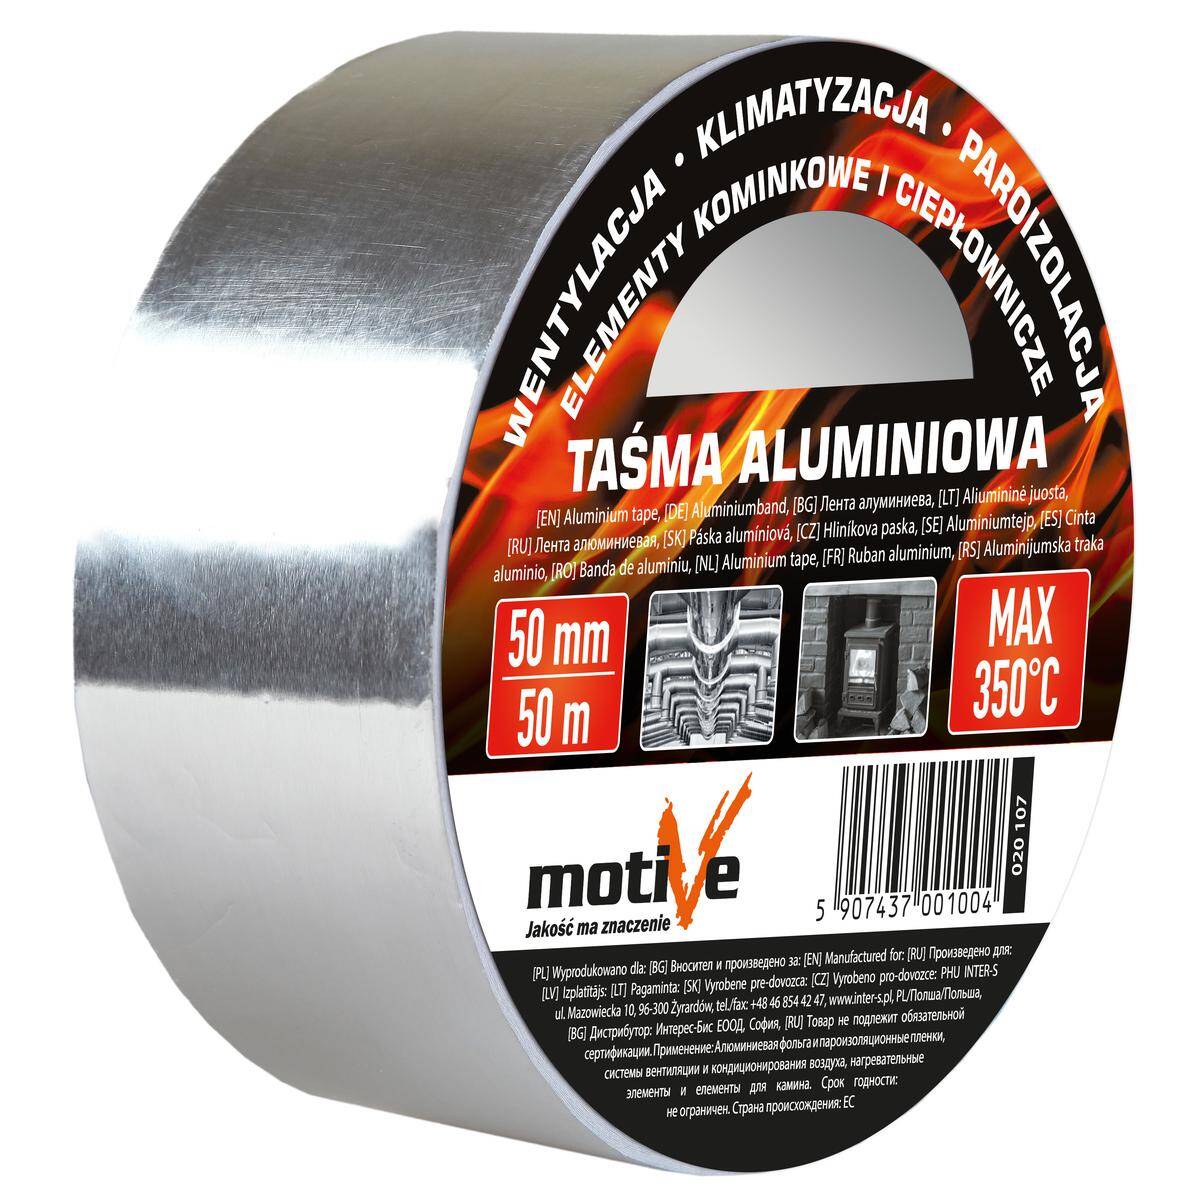 Taśma aluminiowa 50 mm/50 m HT 350⁰ MOTIVE 020 107